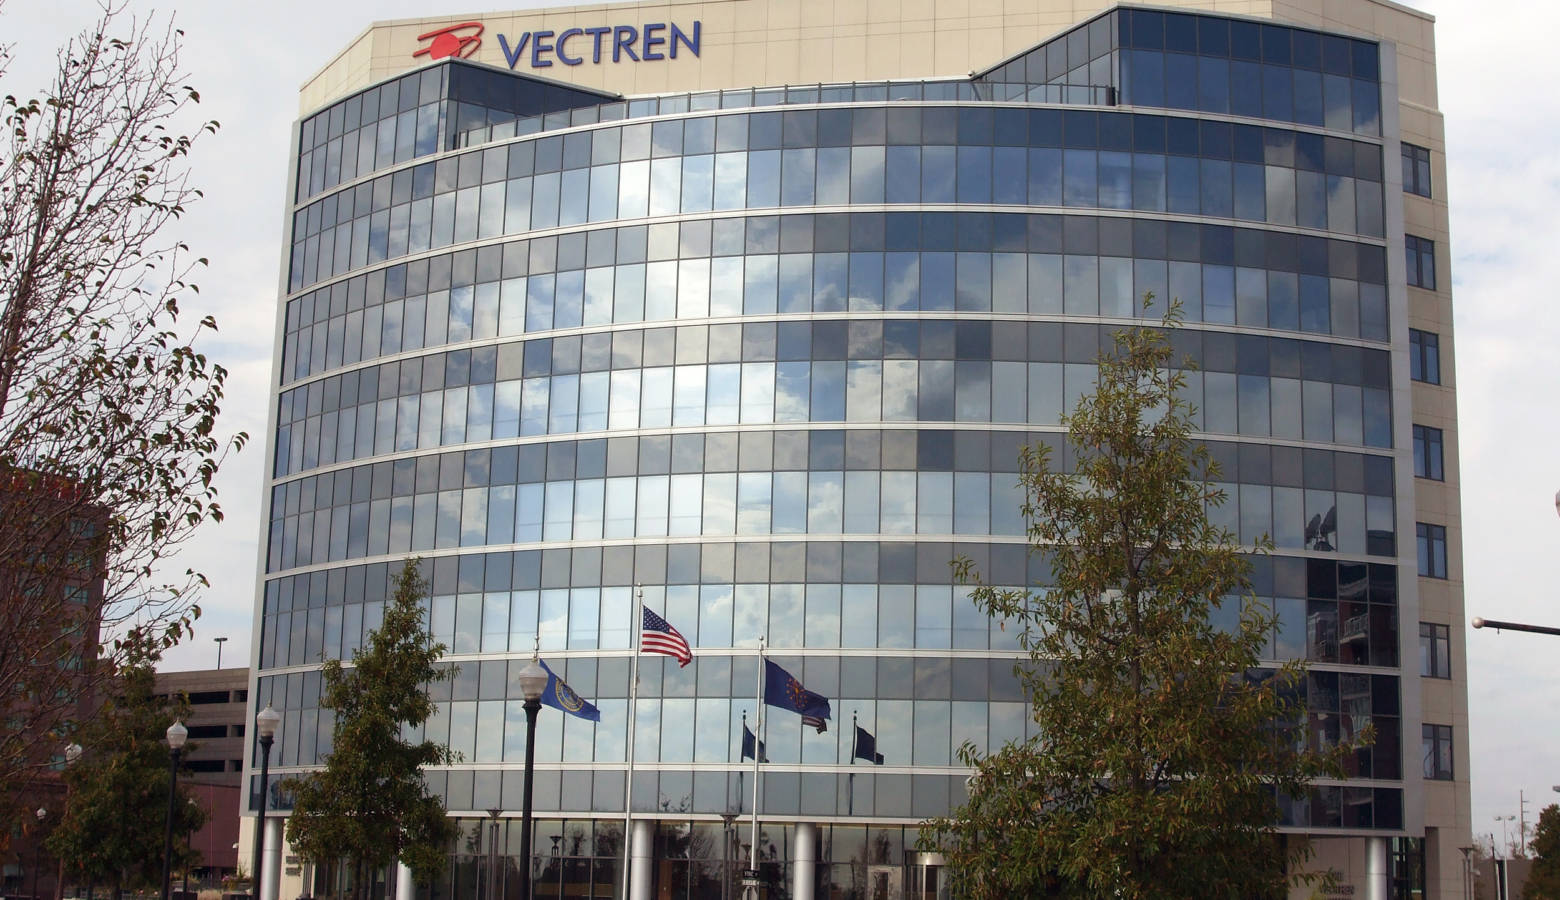 Vectren's Evansville headquarters. (Lori SR/Flickr)